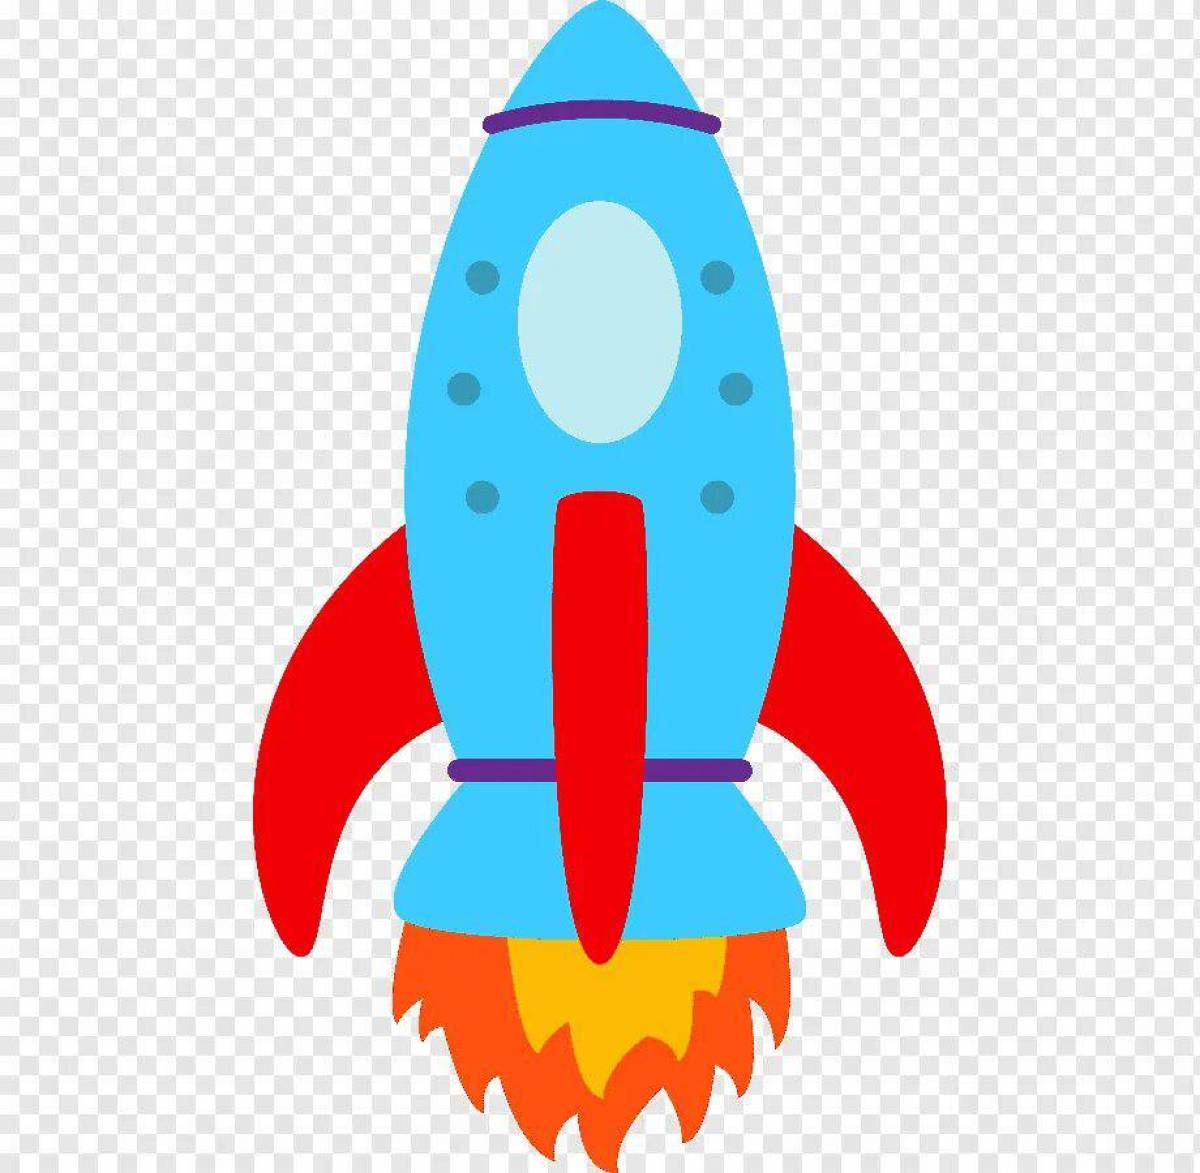 Картинка ракеты для детей цветная. Ракета для детей. Изображение ракеты для детей. Цветная ракета для детей. Космическая ракета для детей.